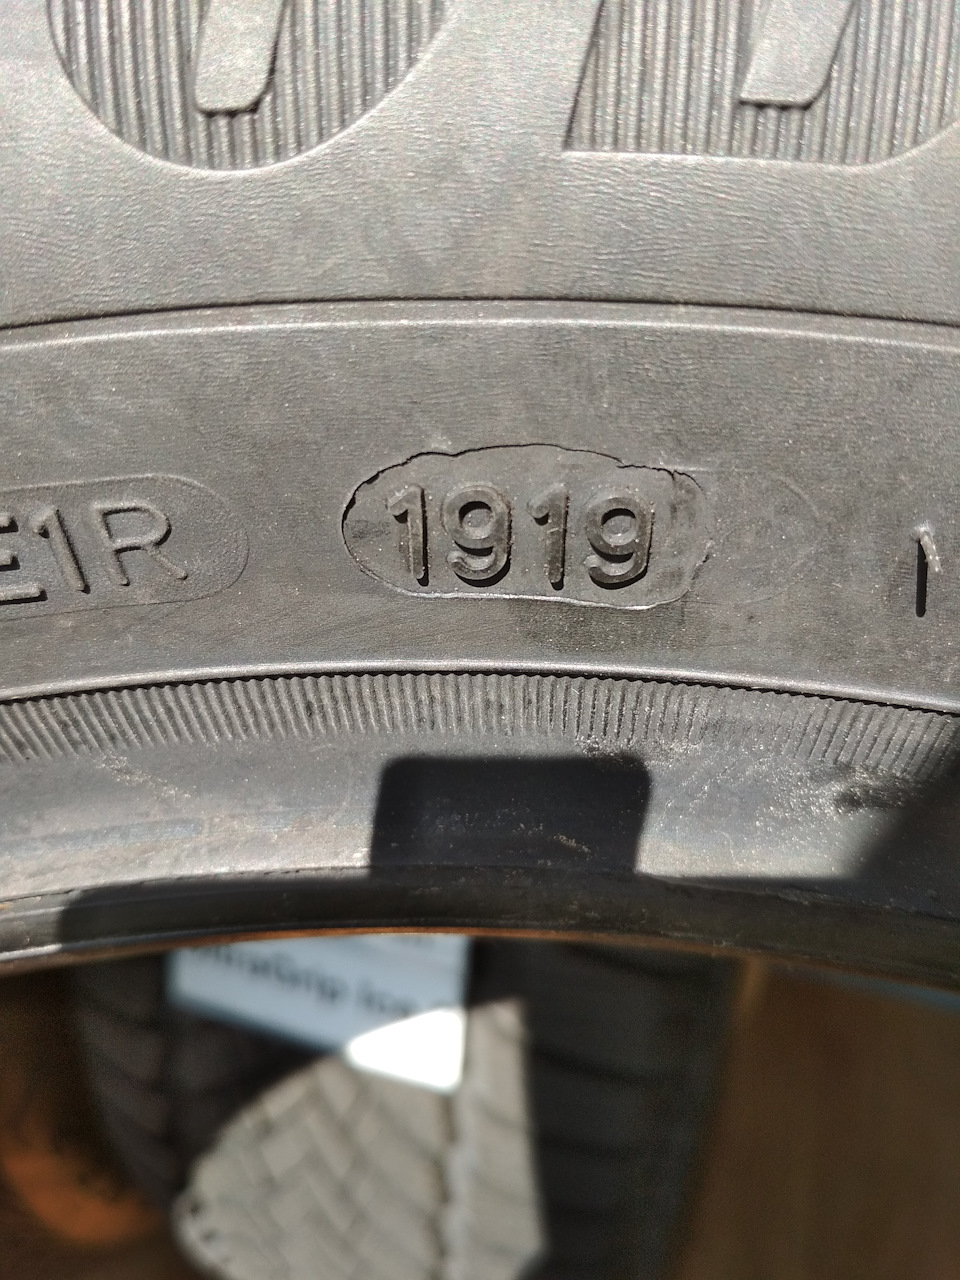 Где на шинах год выпуска фото. Дата производства на Goodyear Ultra Grip. Goodyear ULTRAGRIP Дата производства. Goodyear Ultra Grip Ice 2 205/60 r16 96t. Год выпуска на шинах Гудиер.